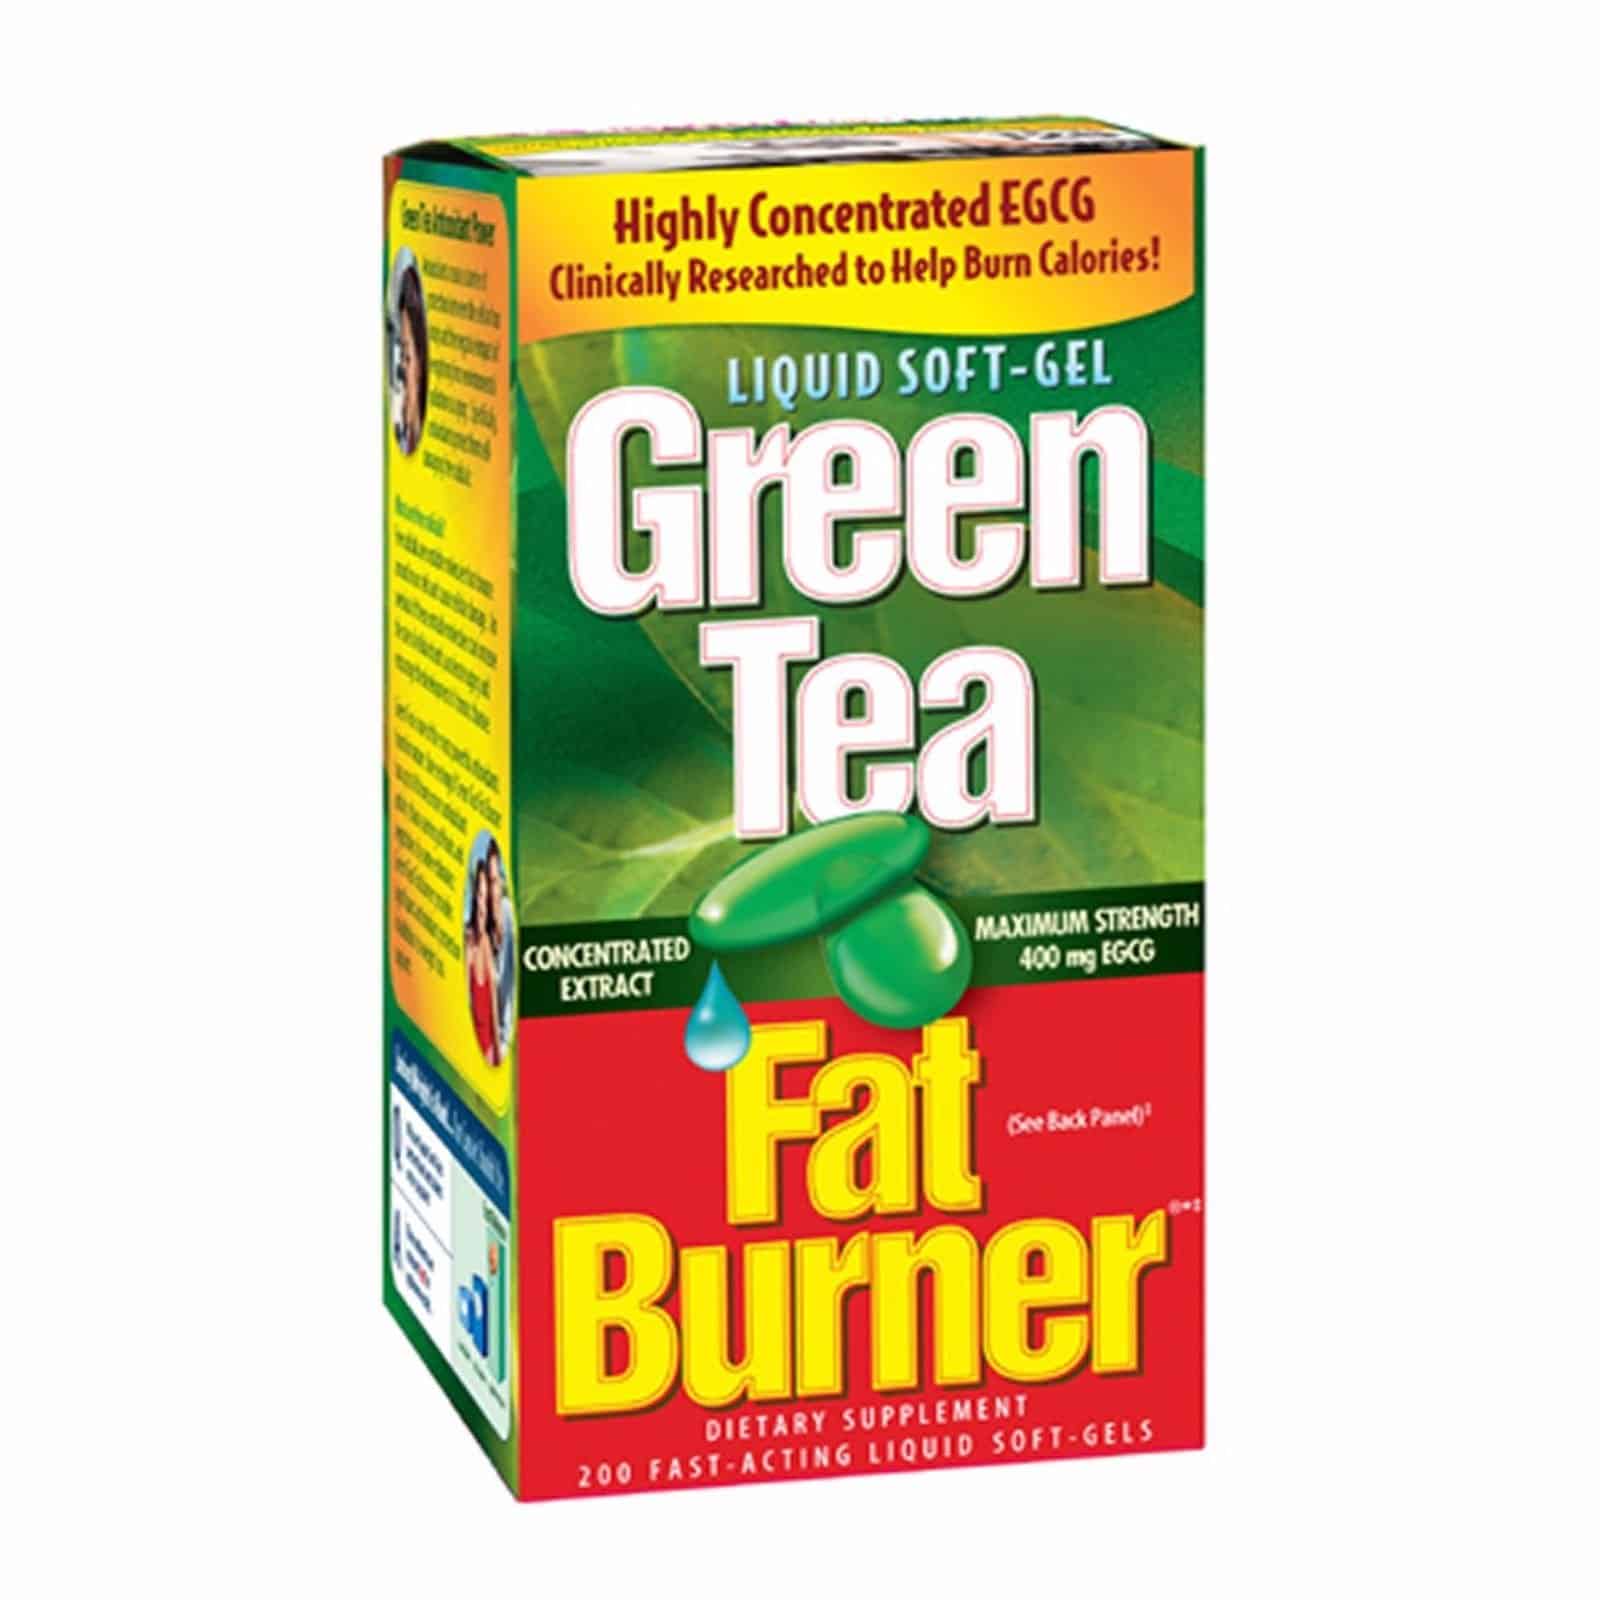 200 Green Tea Fat Burner 400mg EGCG Weight Loss Pills Applied Nutrition ...